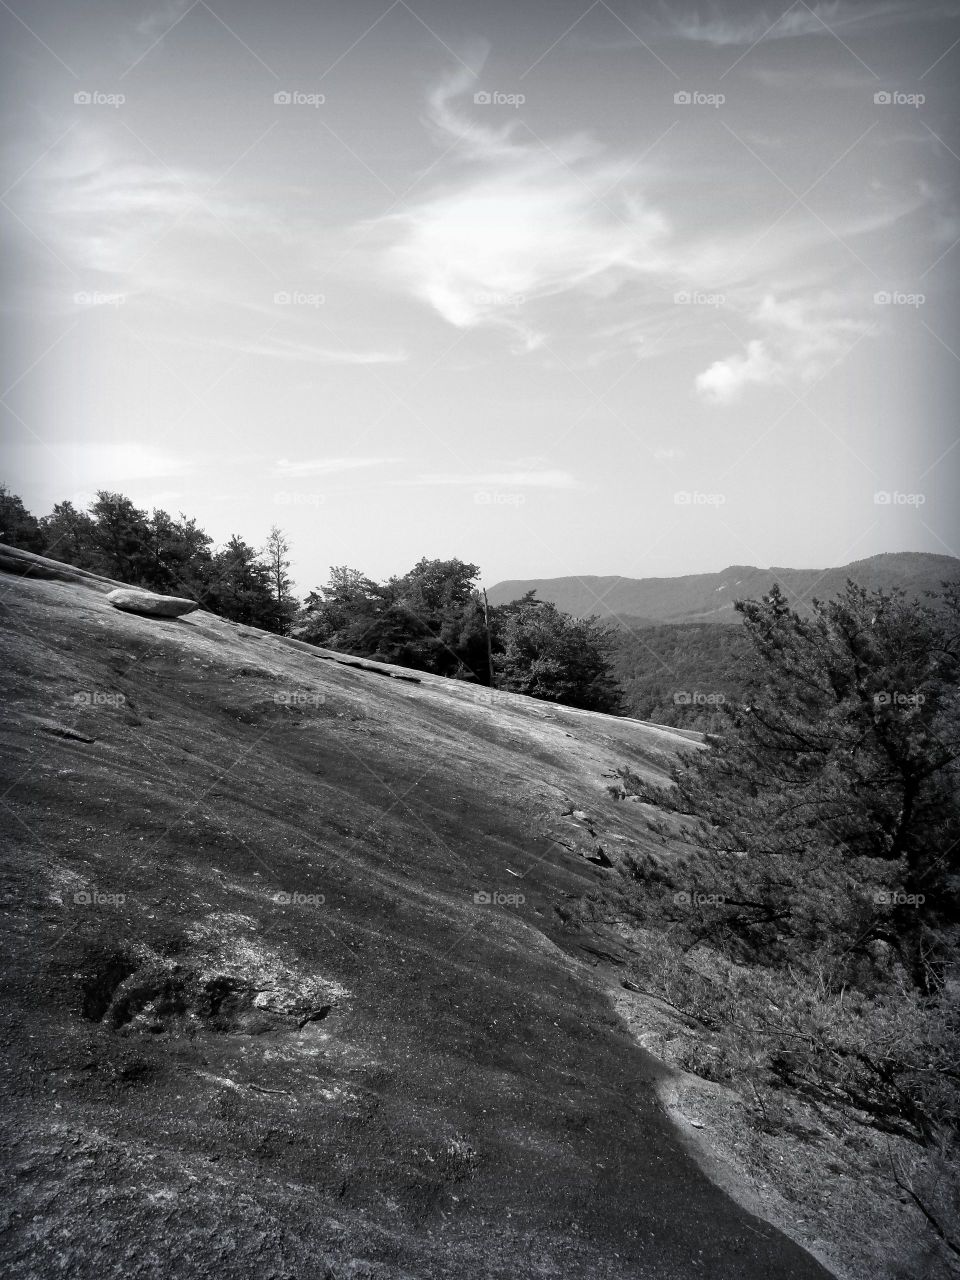 Stone mountain NC